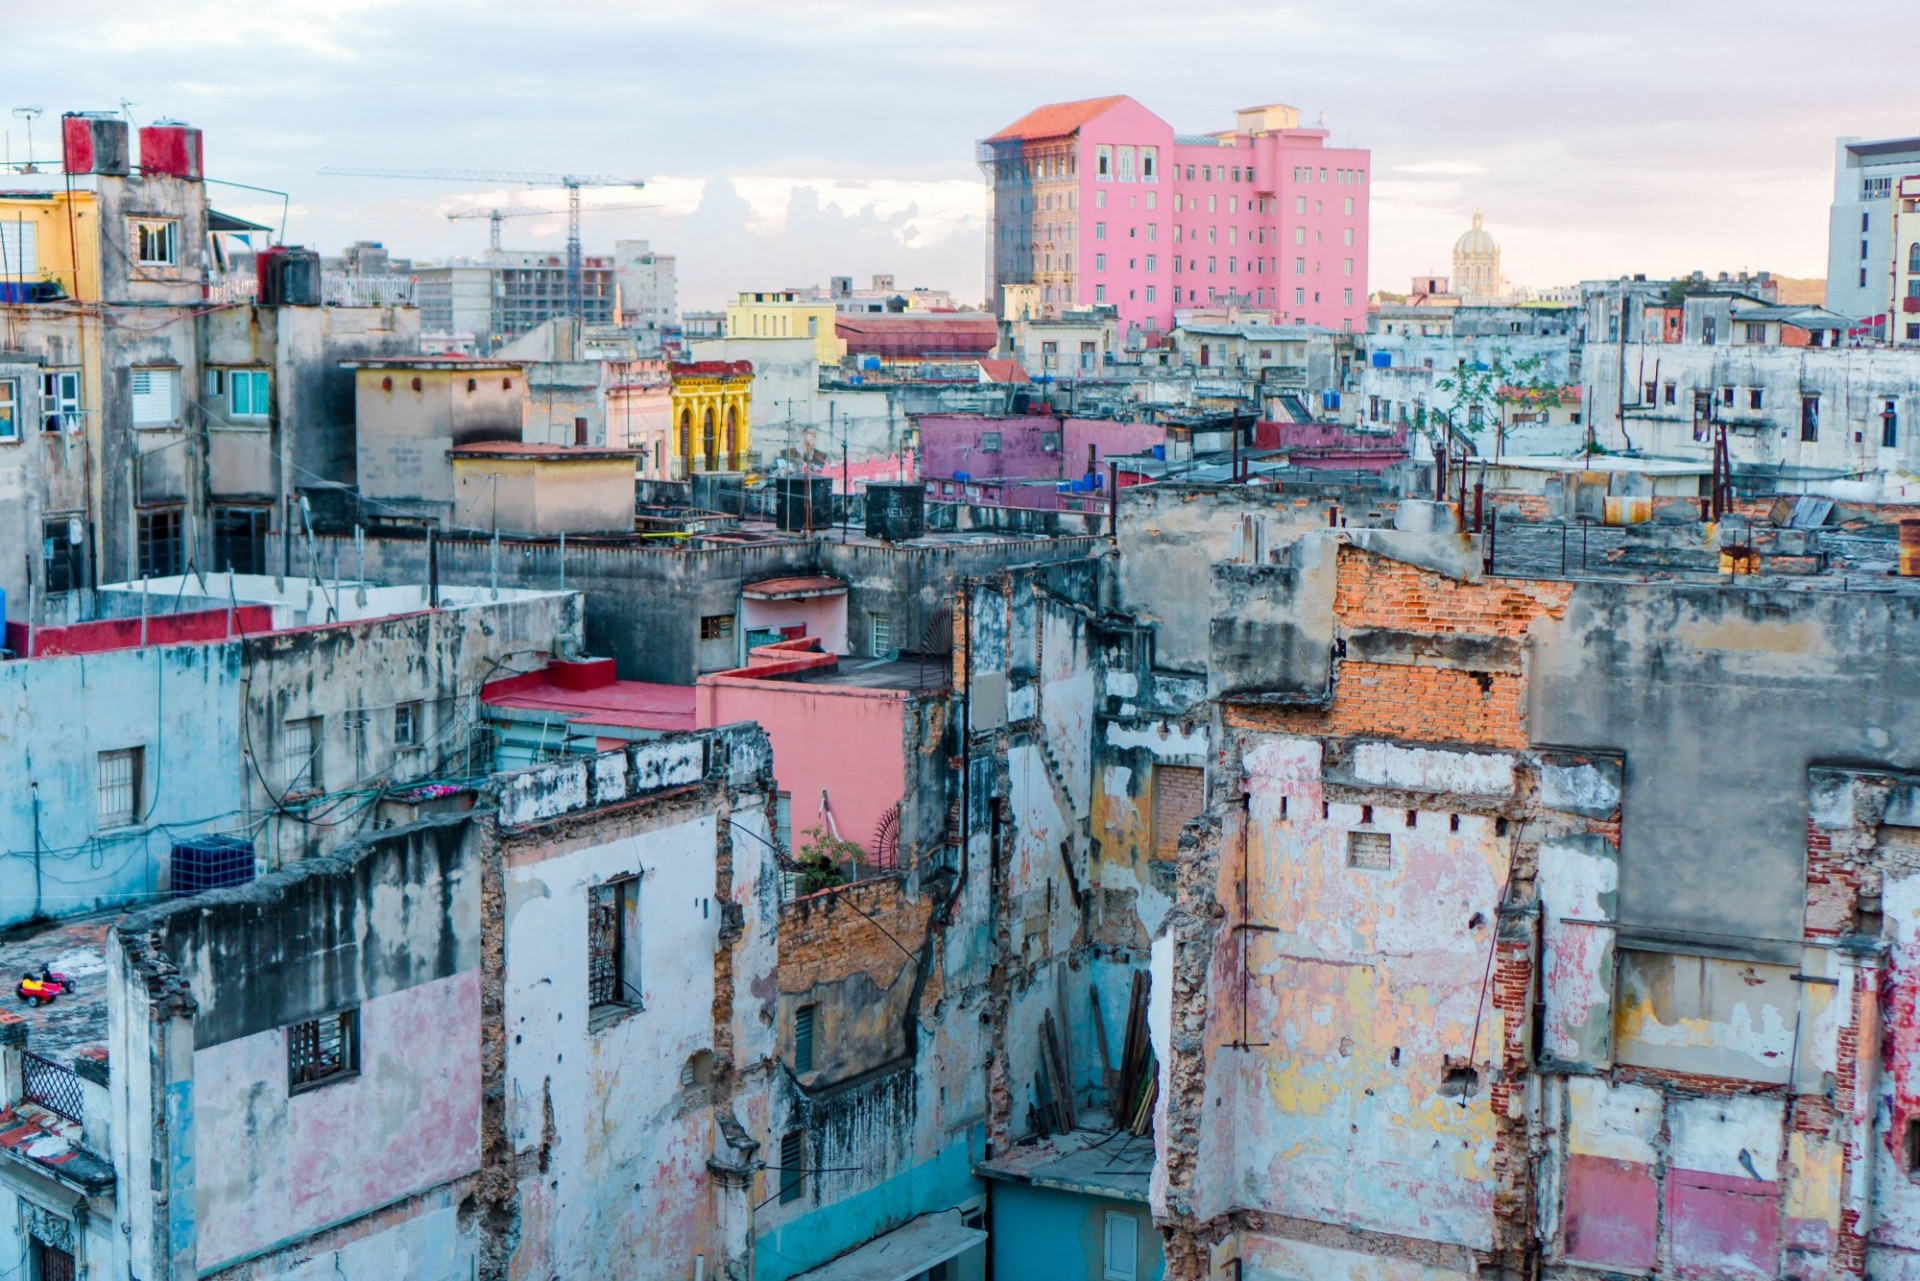 Vista de La Habana con edificios derrumbandose pintados de colores alegres